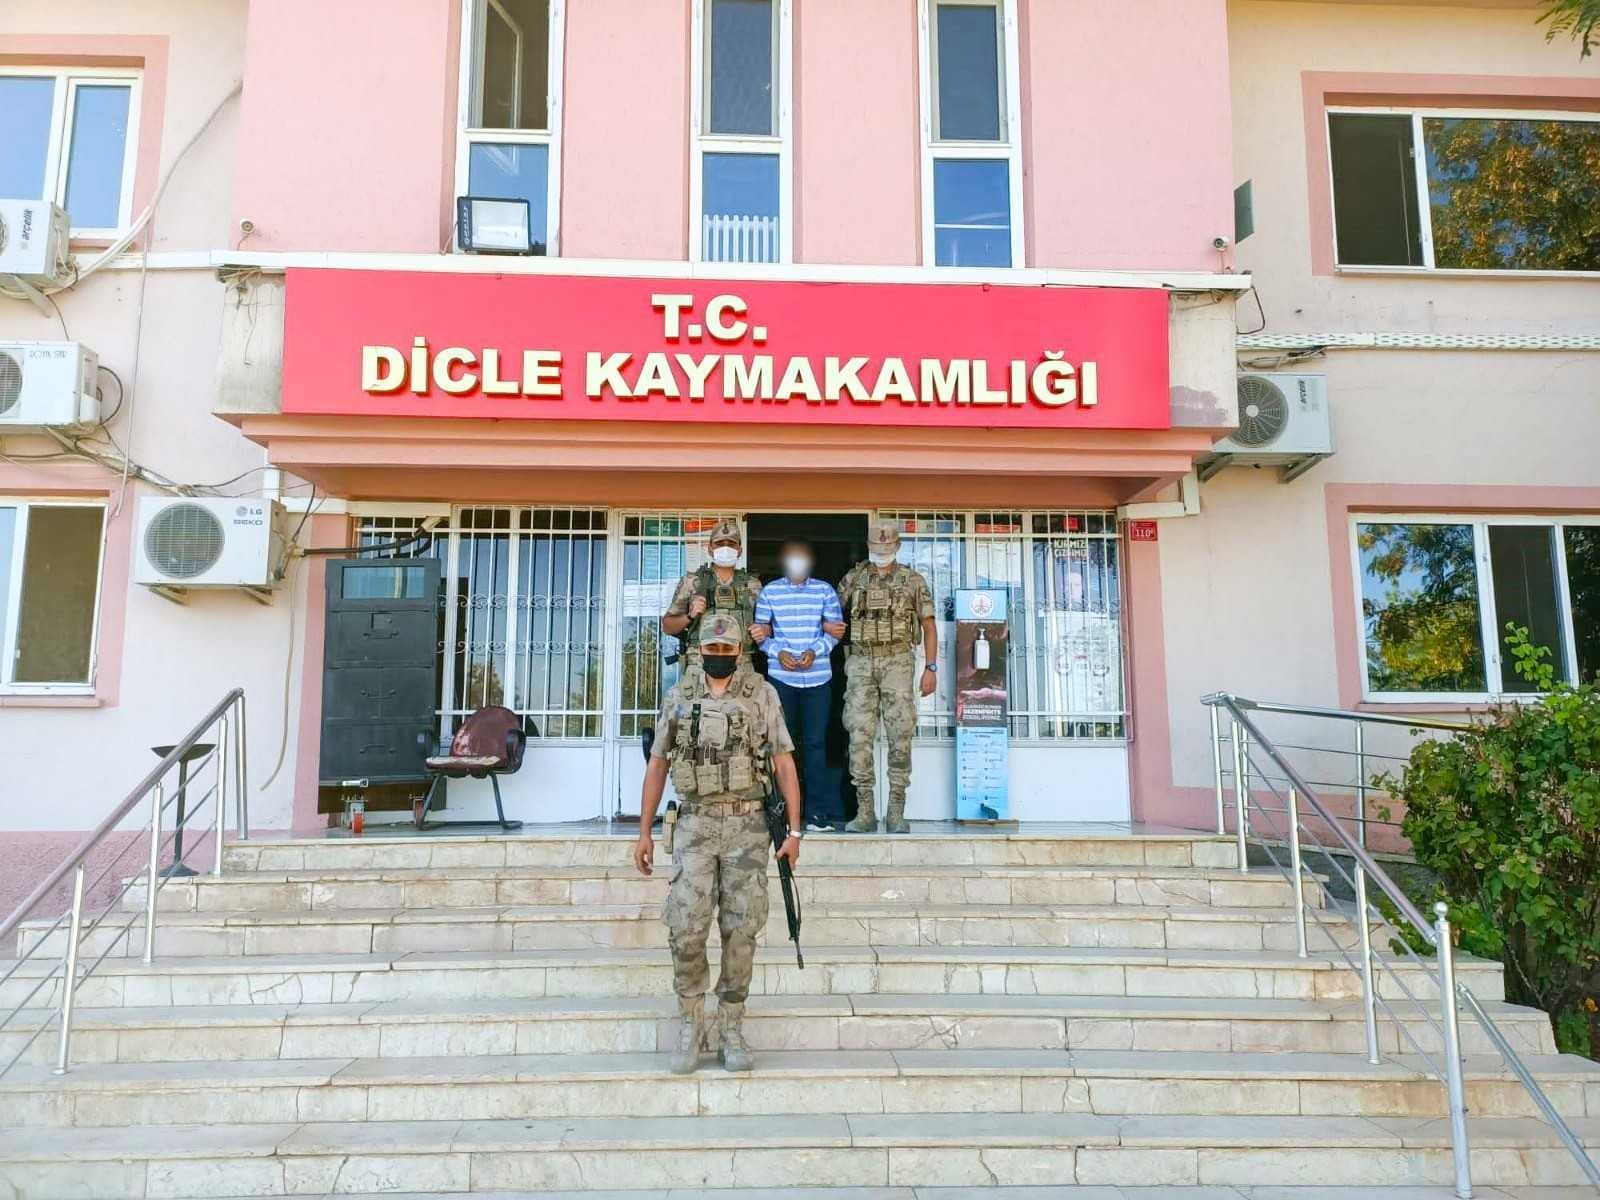 Diyarbakır’da hakkında 17 yıl 36 ay 10 gün hapis cezası olan şahsı JASAT yakaladı #diyarbakir